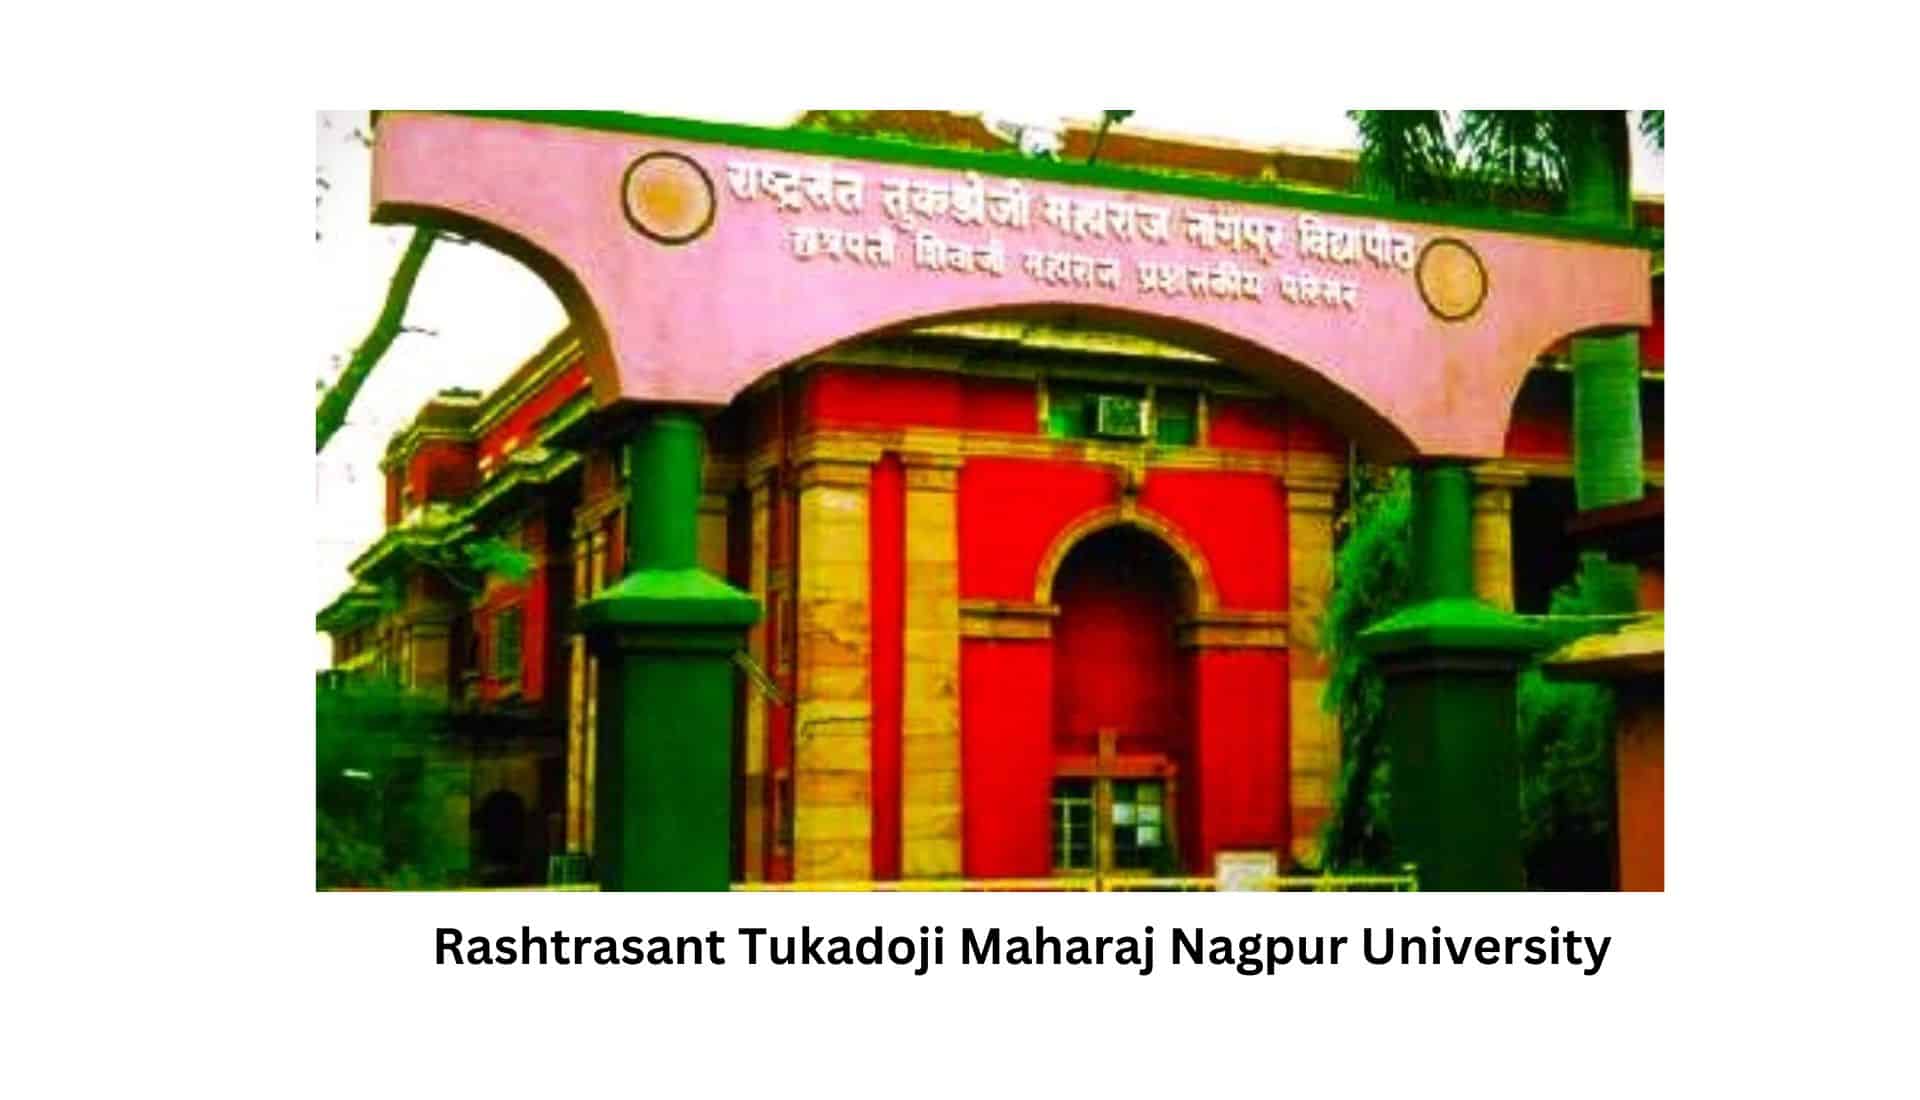 Rashtrasant Tukadoji Maharaj Nagpur University: राष्ट्रसंत तुकडोजी महाराज नागपुर यूनिवर्सिटी